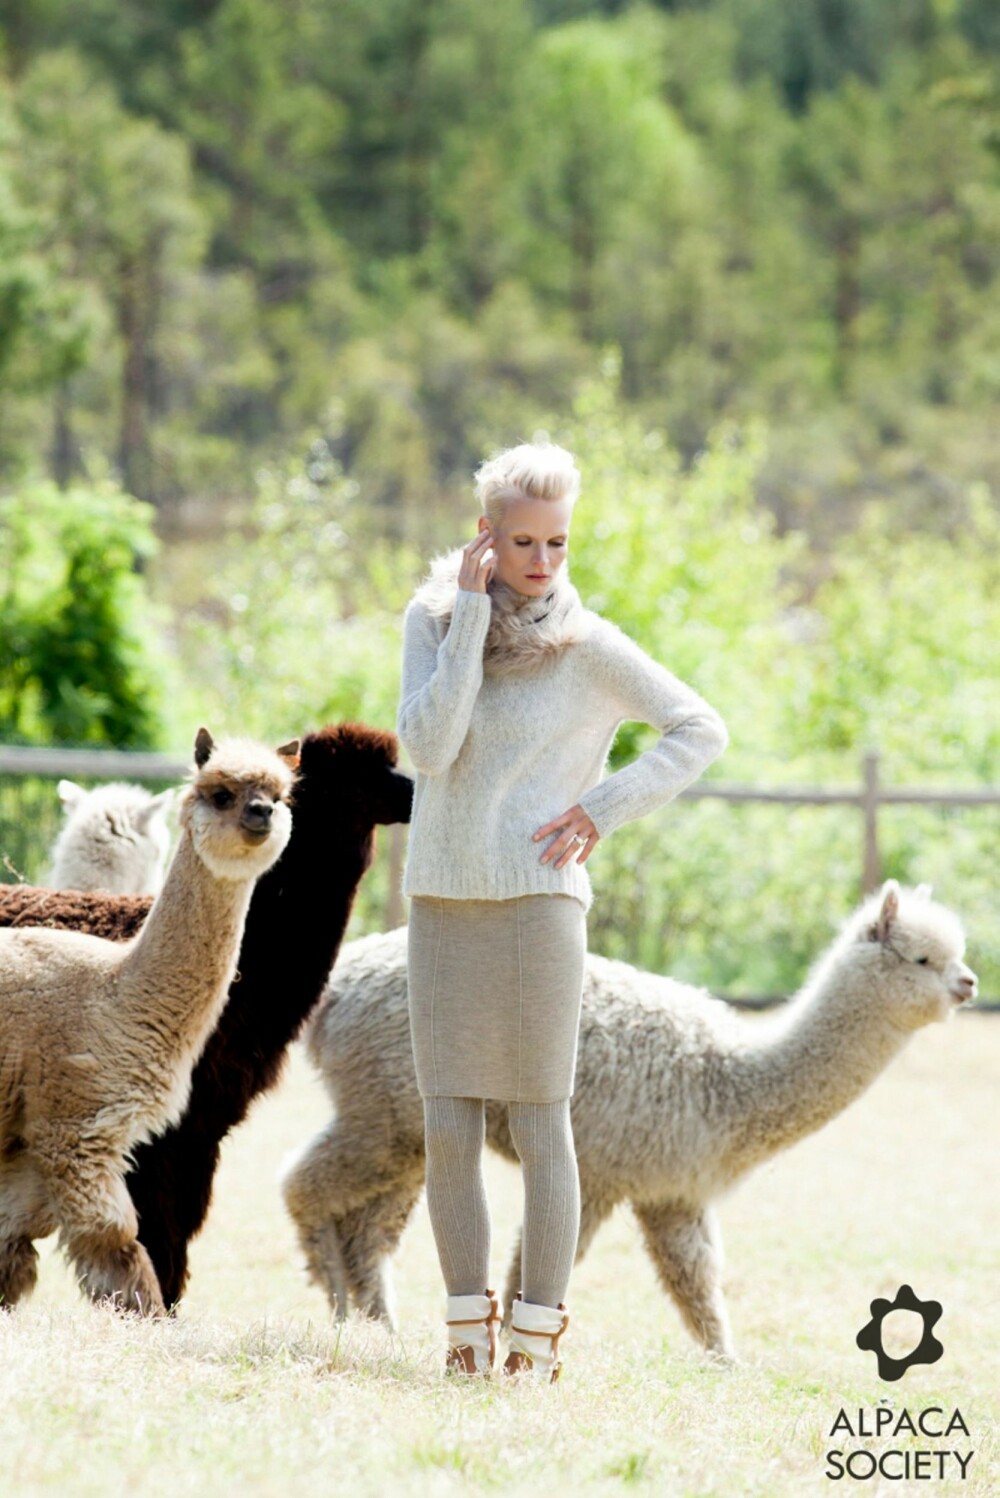 PELS FRA ALPAKKA: Det norske klesmerket Alpaca Society bruker økologisk pels fra alpakka.